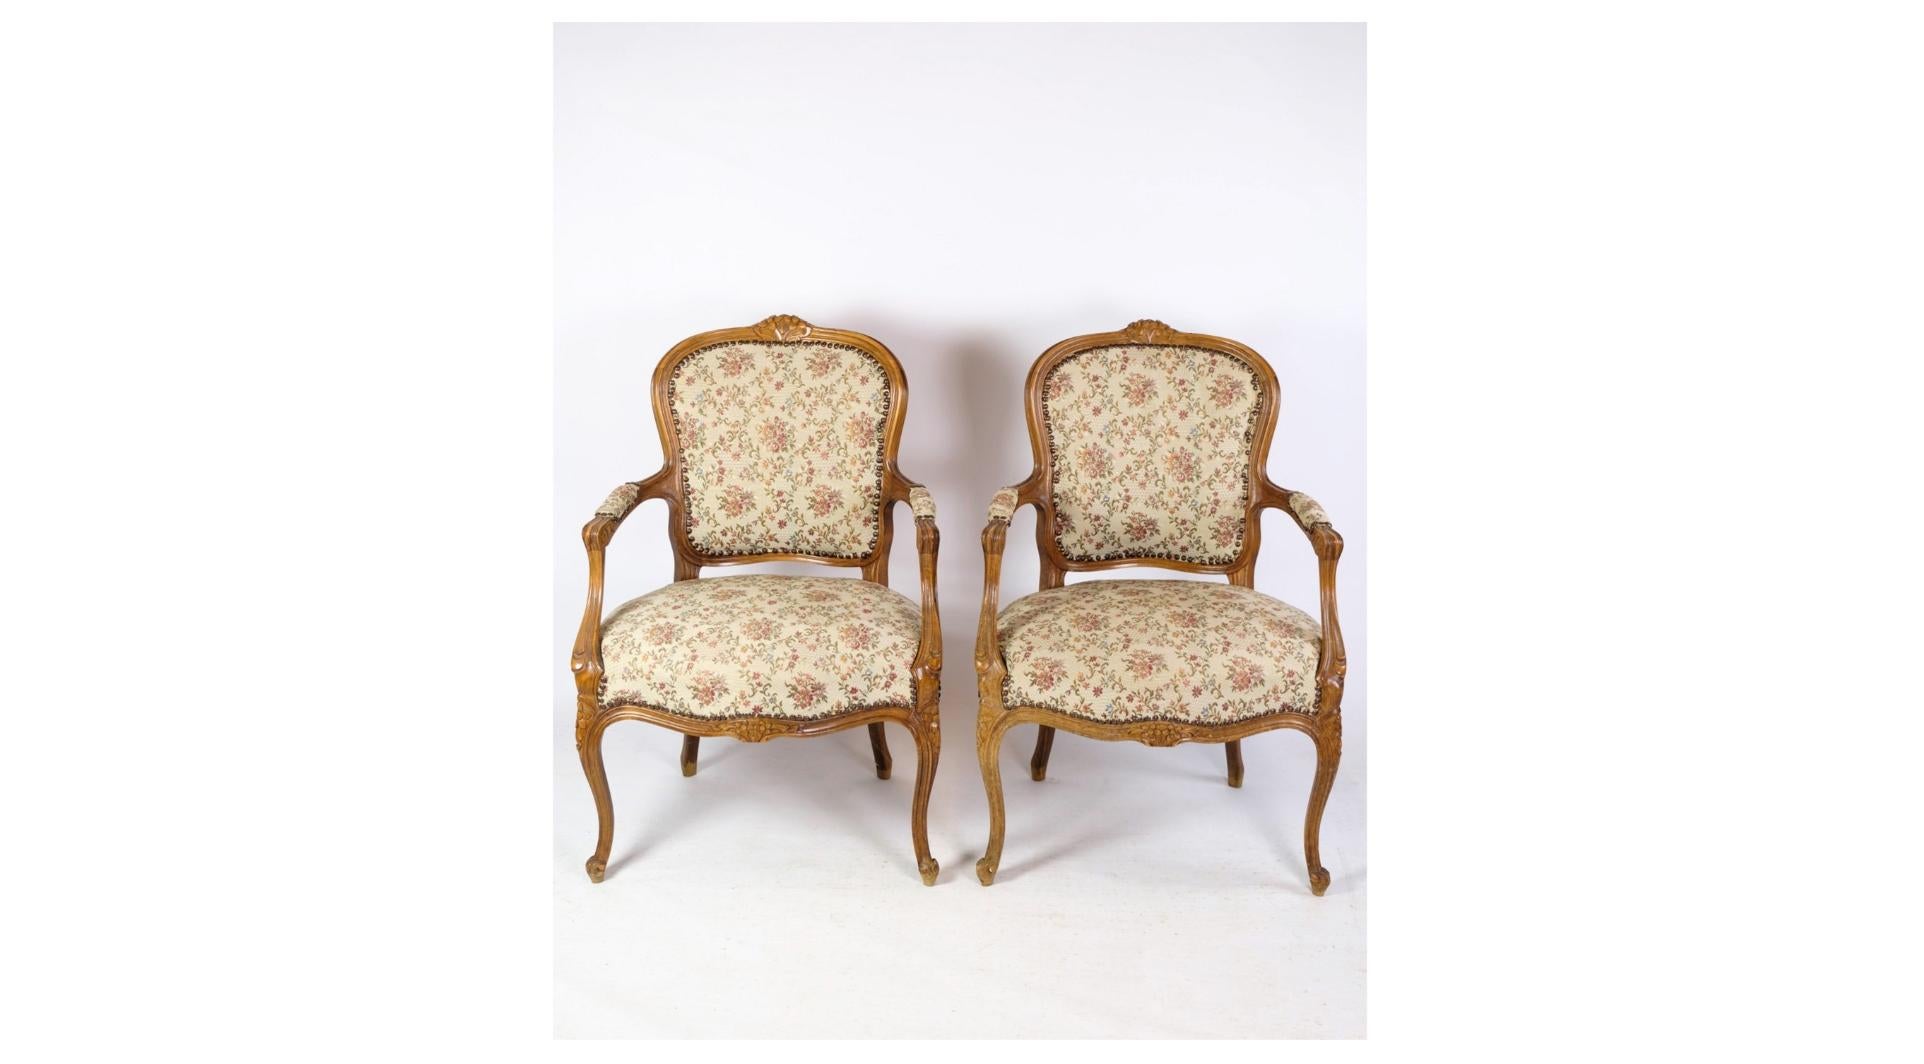 Une paire de fauteuils néo-rococo avec tissu décoratif en bois clair datant des années 1930 est une belle représentation du design et de l'esthétique du mobilier du début du XXe siècle. Ces chaises allient l'élégance et la sophistication à une